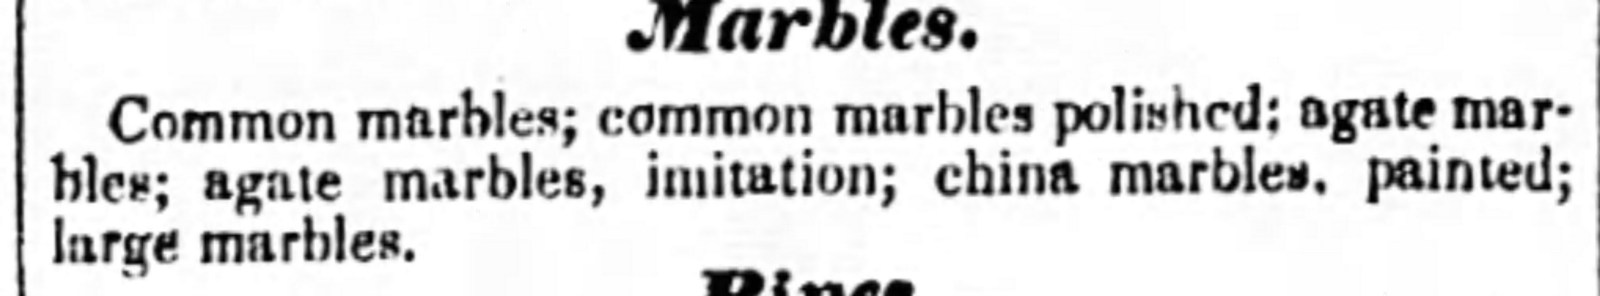 1849_The_Camden_Weekly_Journal_Wed_Nov_14_1849_.jpg